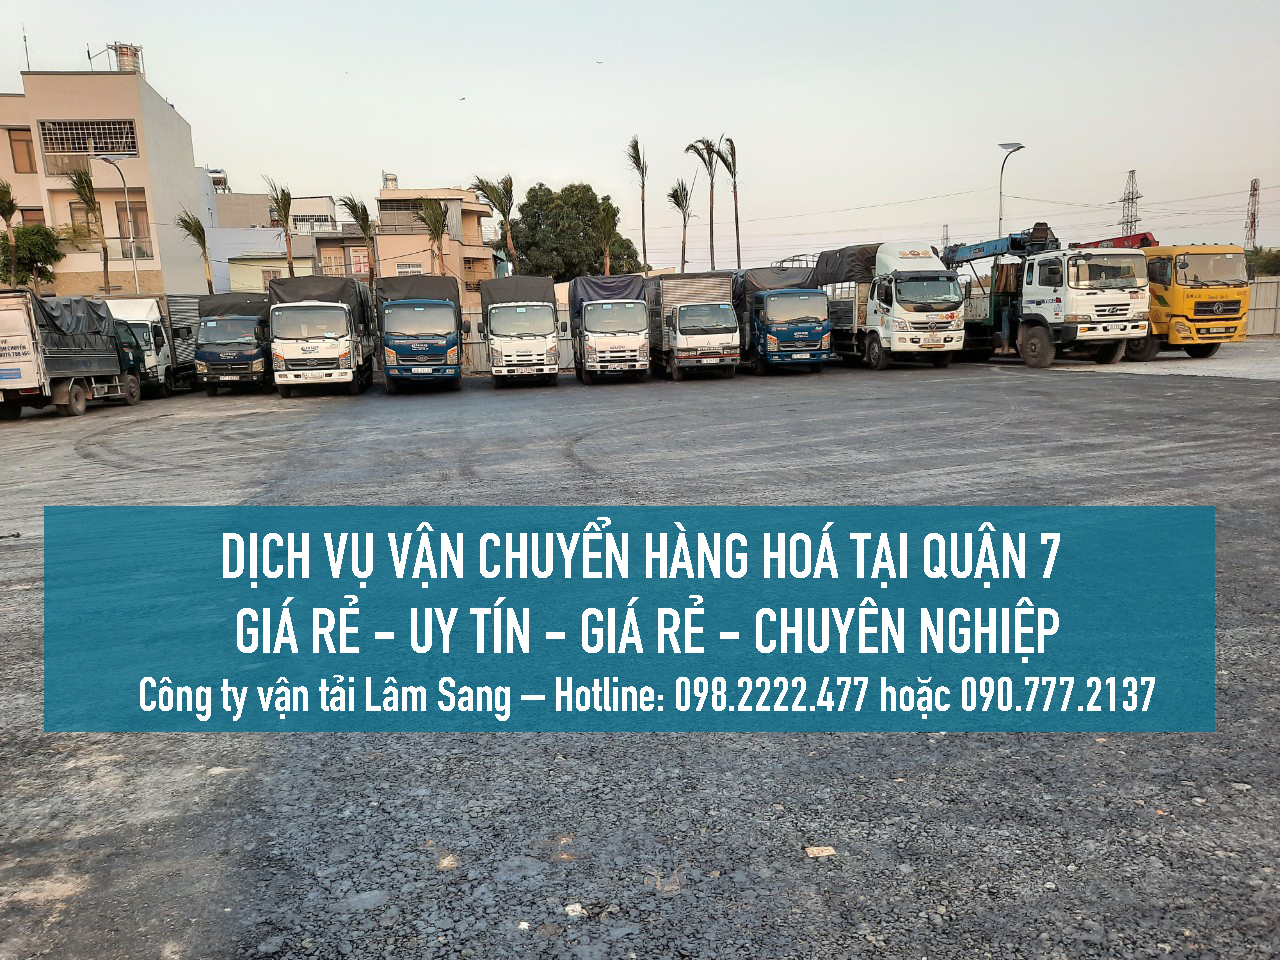 Dịch vụ vận chuyển hàng hoá Quận 7 – vận tải Lâm Sang